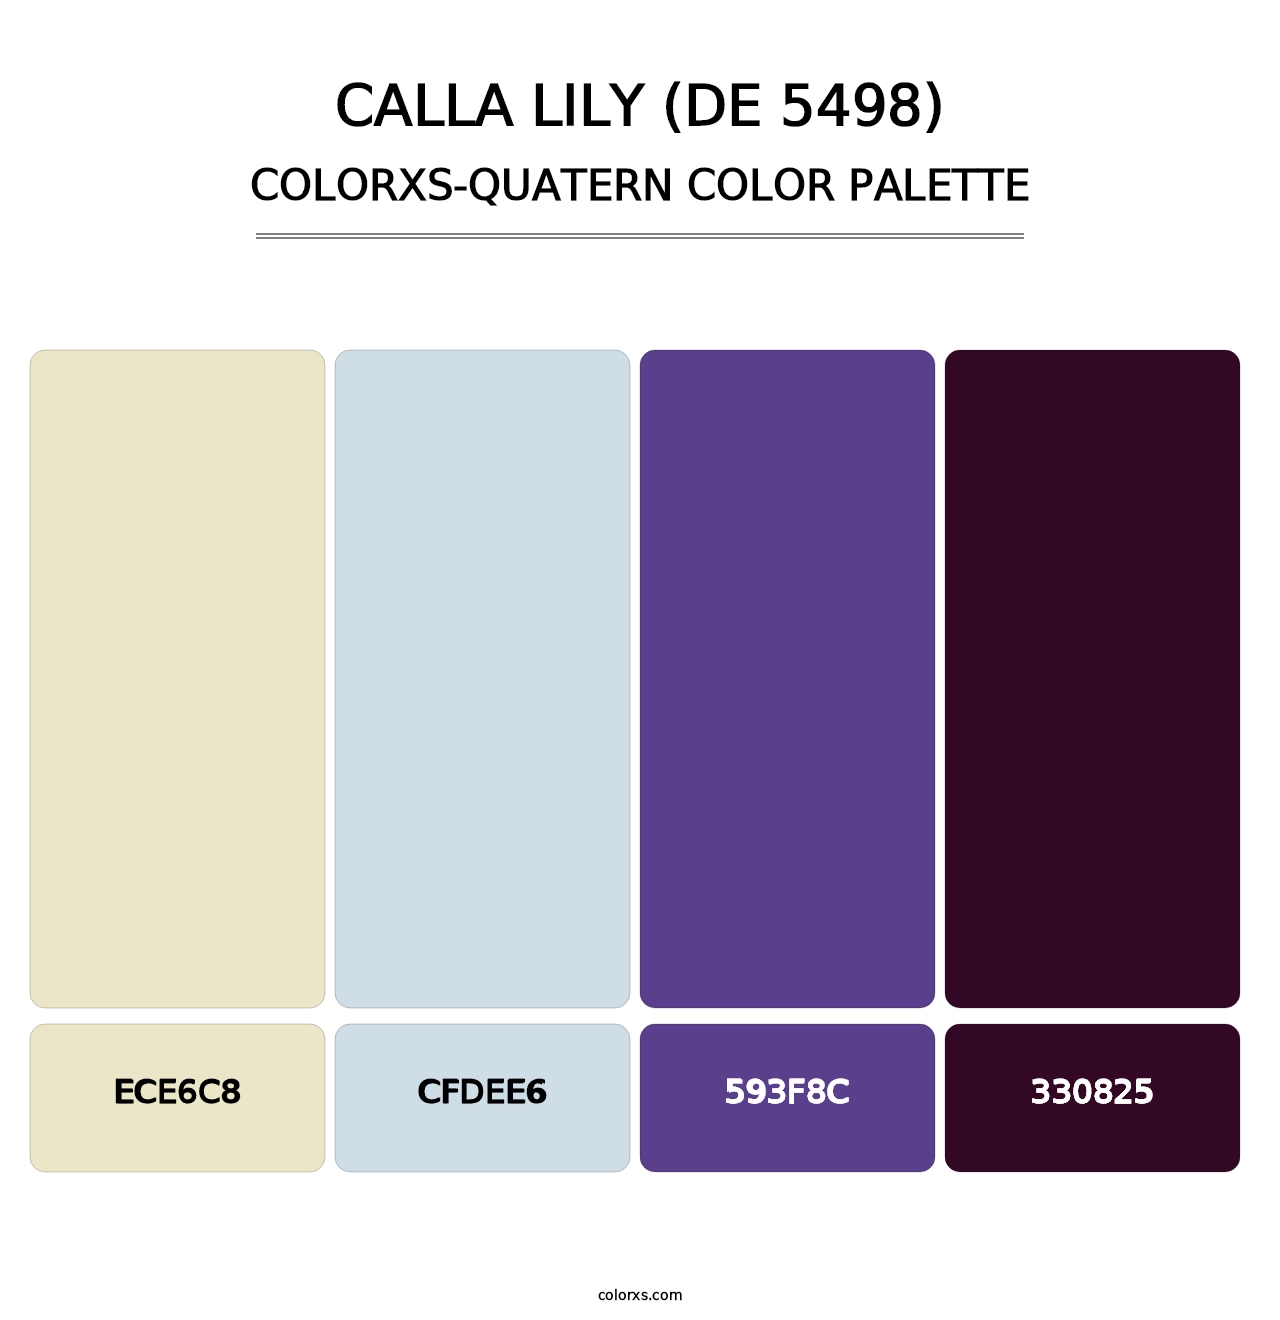 Calla Lily (DE 5498) - Colorxs Quatern Palette